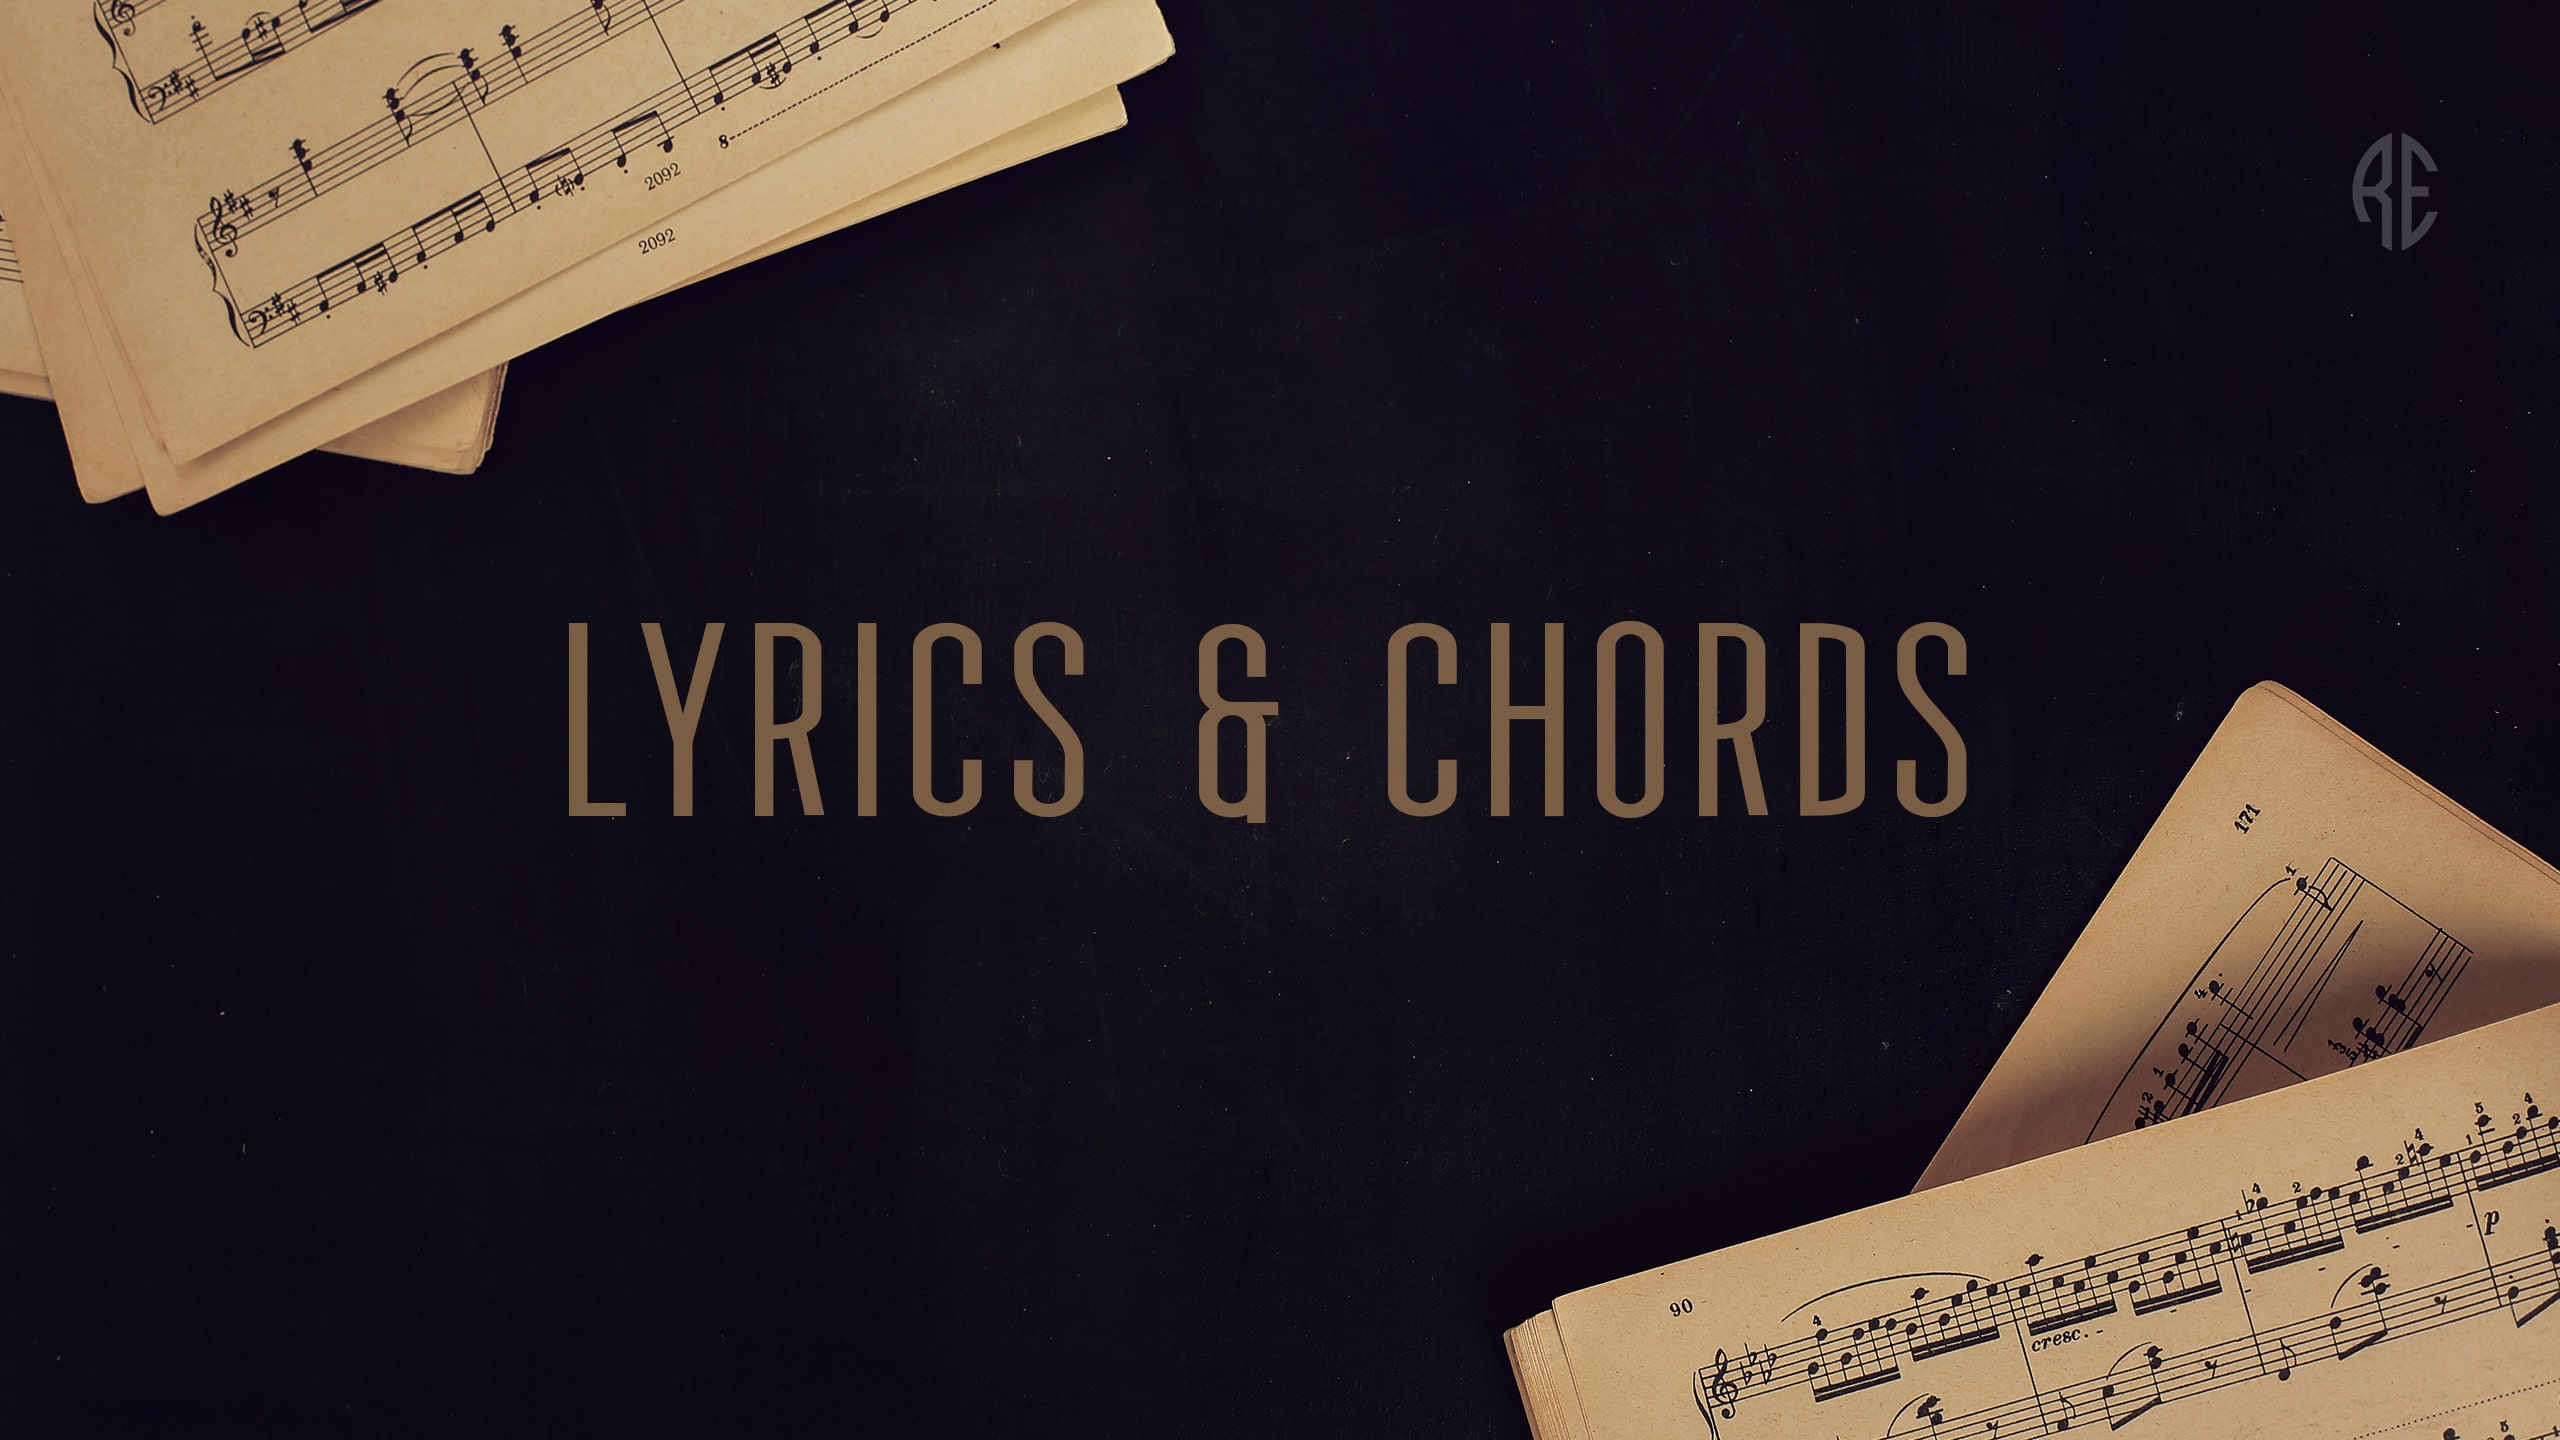 Lyrics & Chords